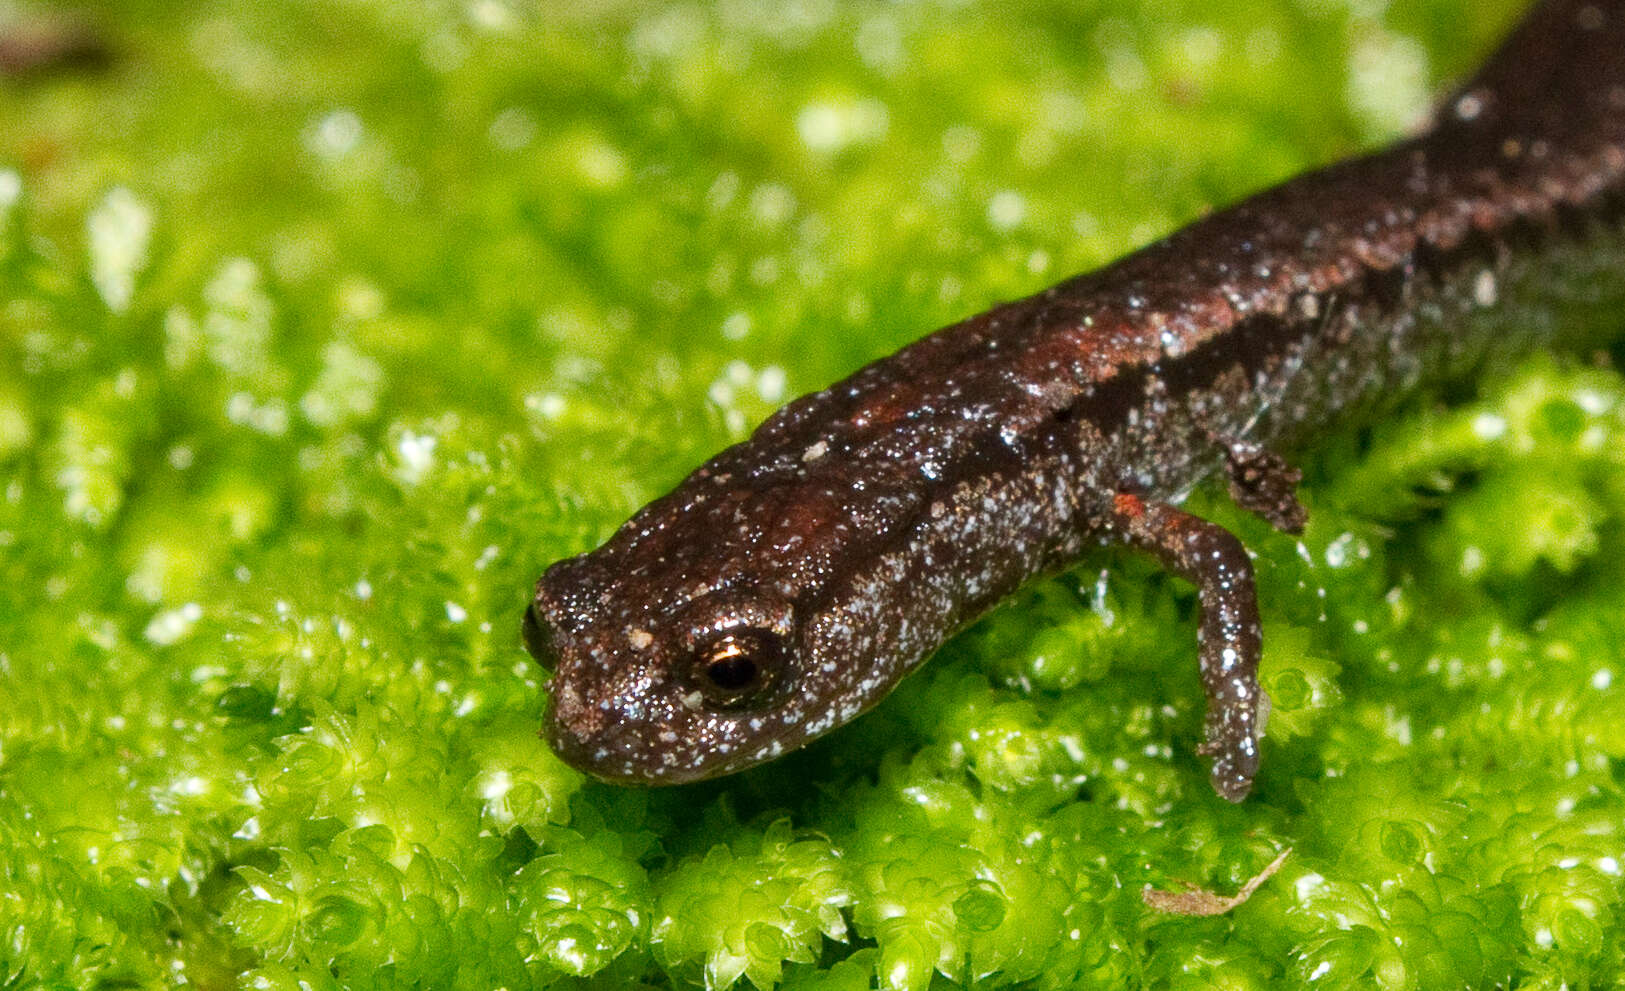 Image of Slender salamander